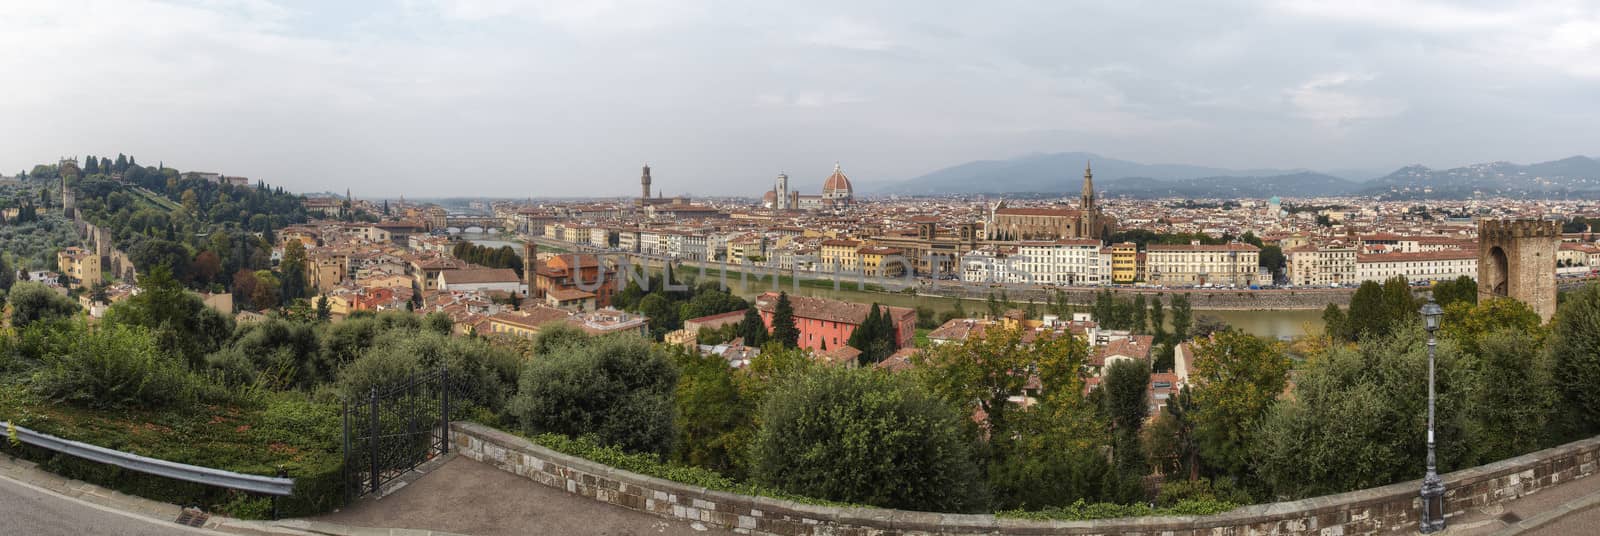 Florence cityscape with Duomo Santa Maria Del Fiore and Piazza Della Signoria from Piazzale Michelangelo, Italy